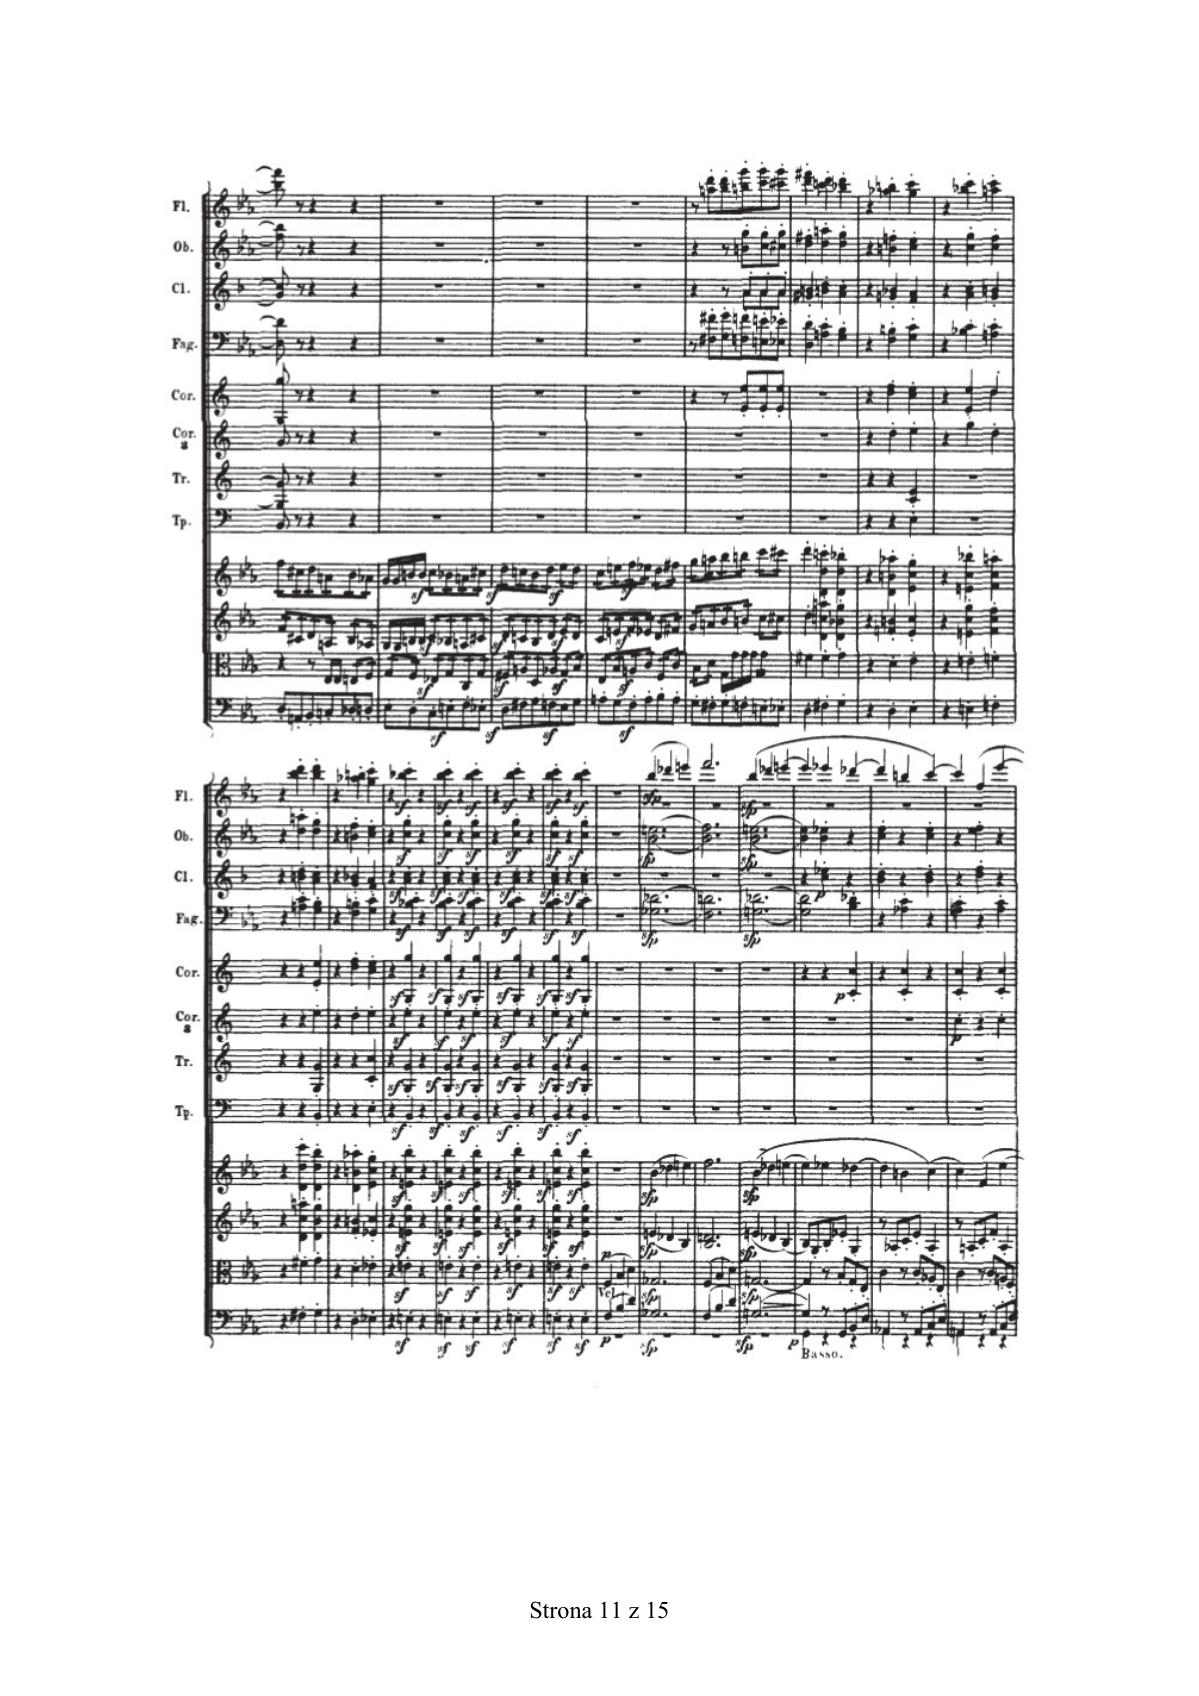 zadanie 17 - Ludwig van Beethoven, III Symfonia Es-dur op. 55, cz. I - fragment-7